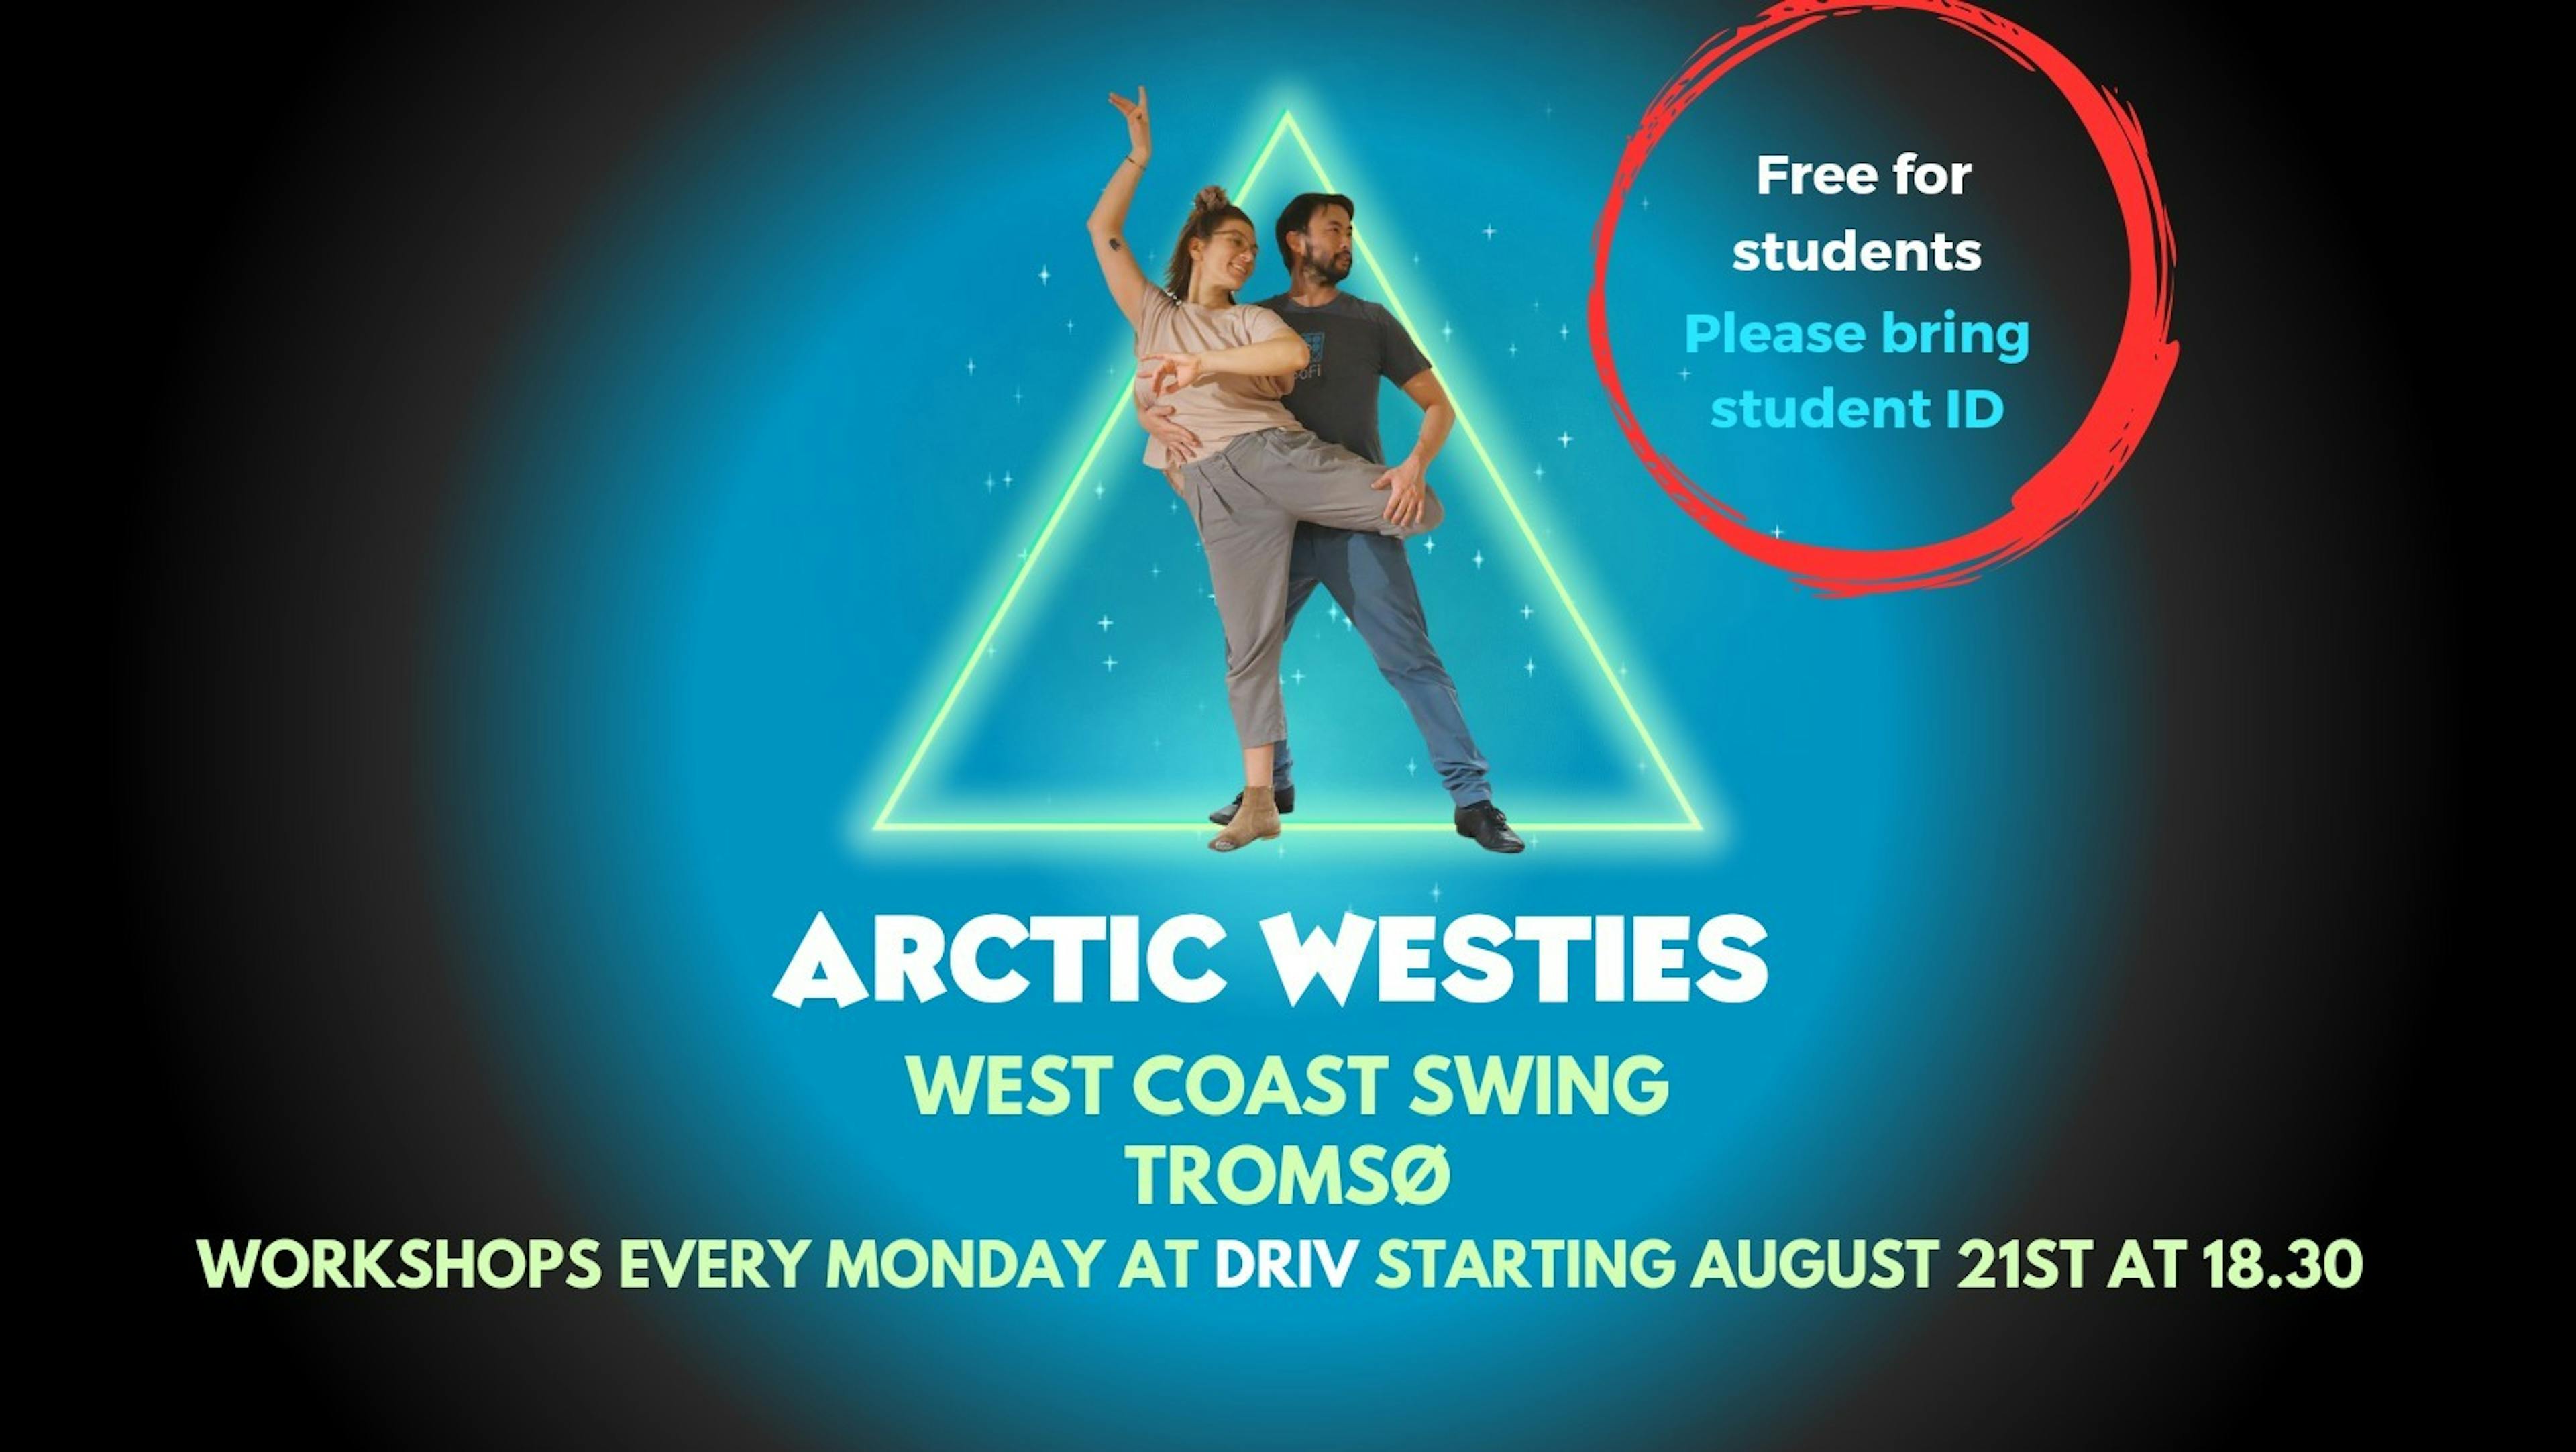 West Coast Swing workshops social dancing